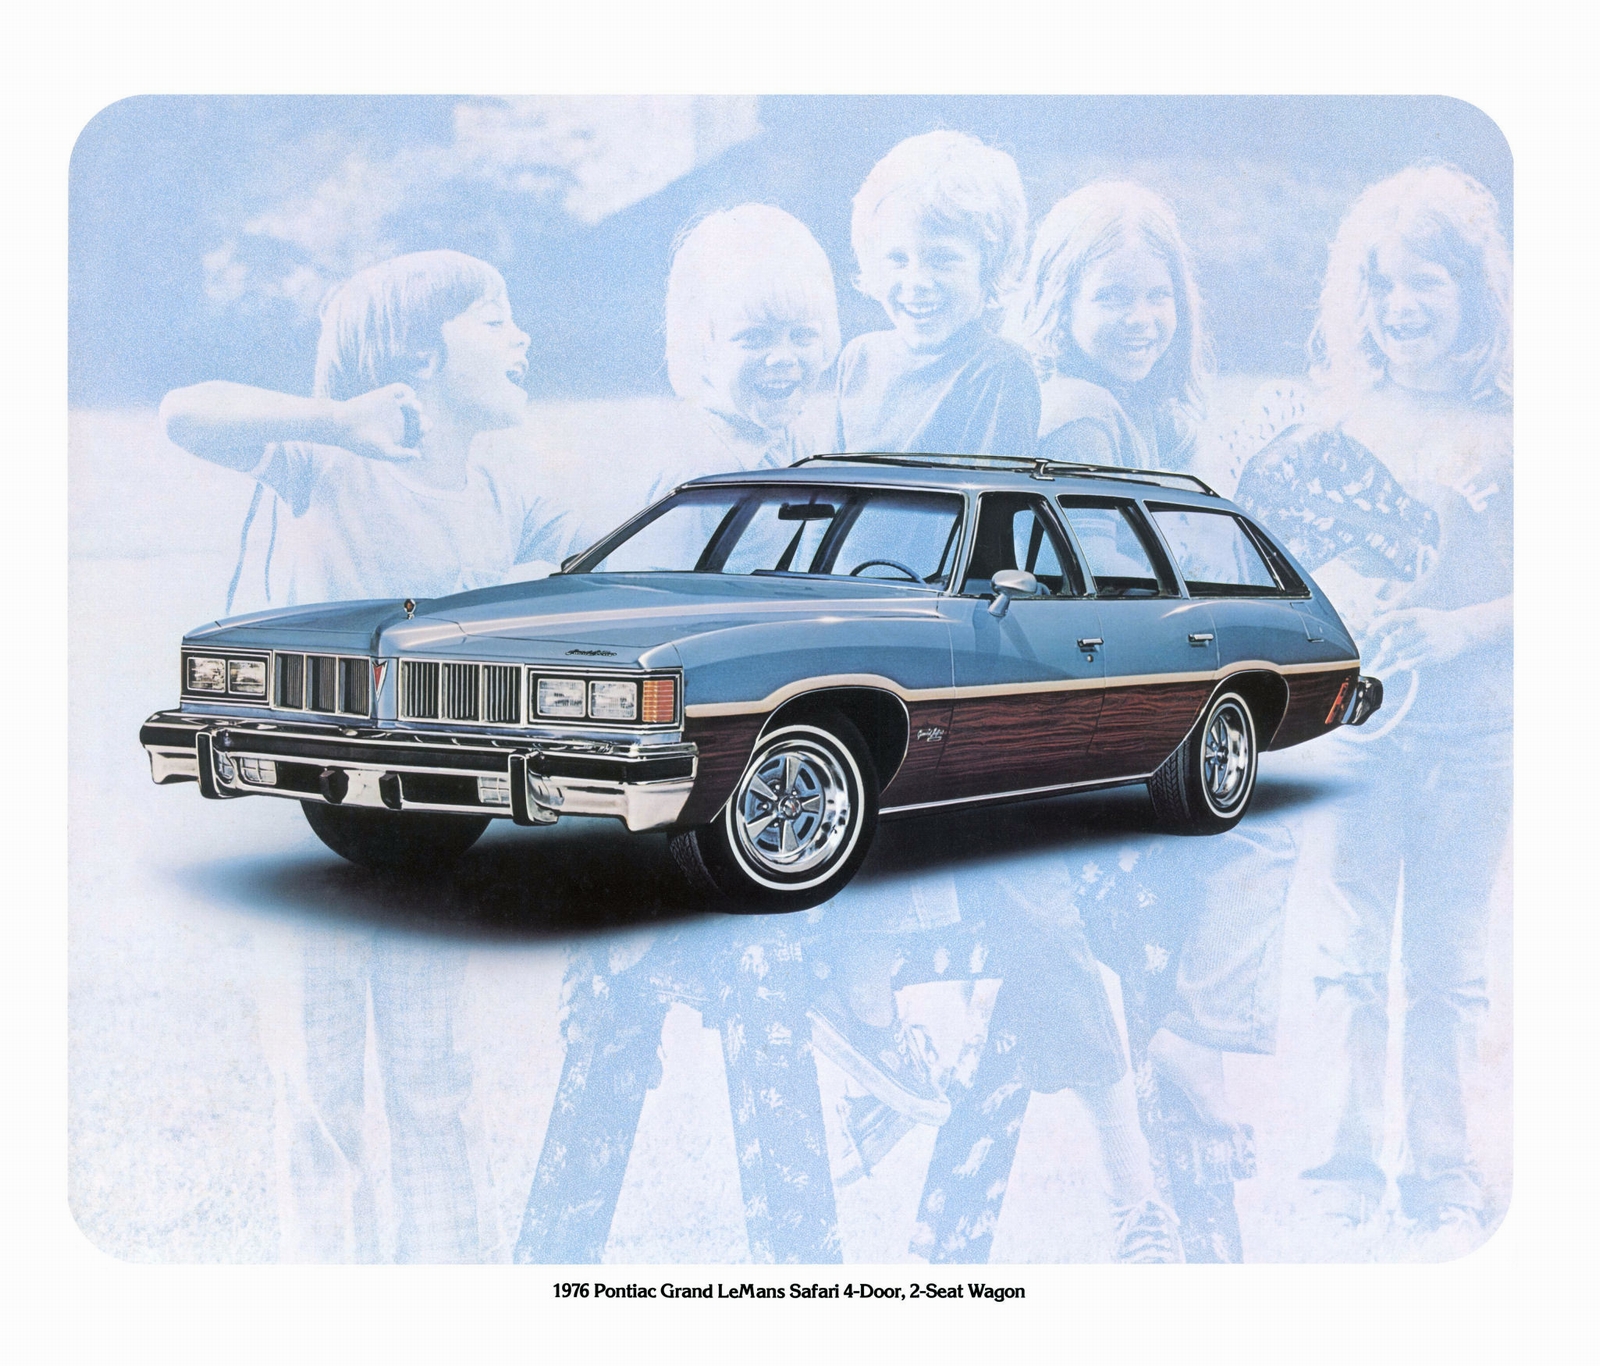 n_1976 Pontiac Showroom Poster-02.jpg